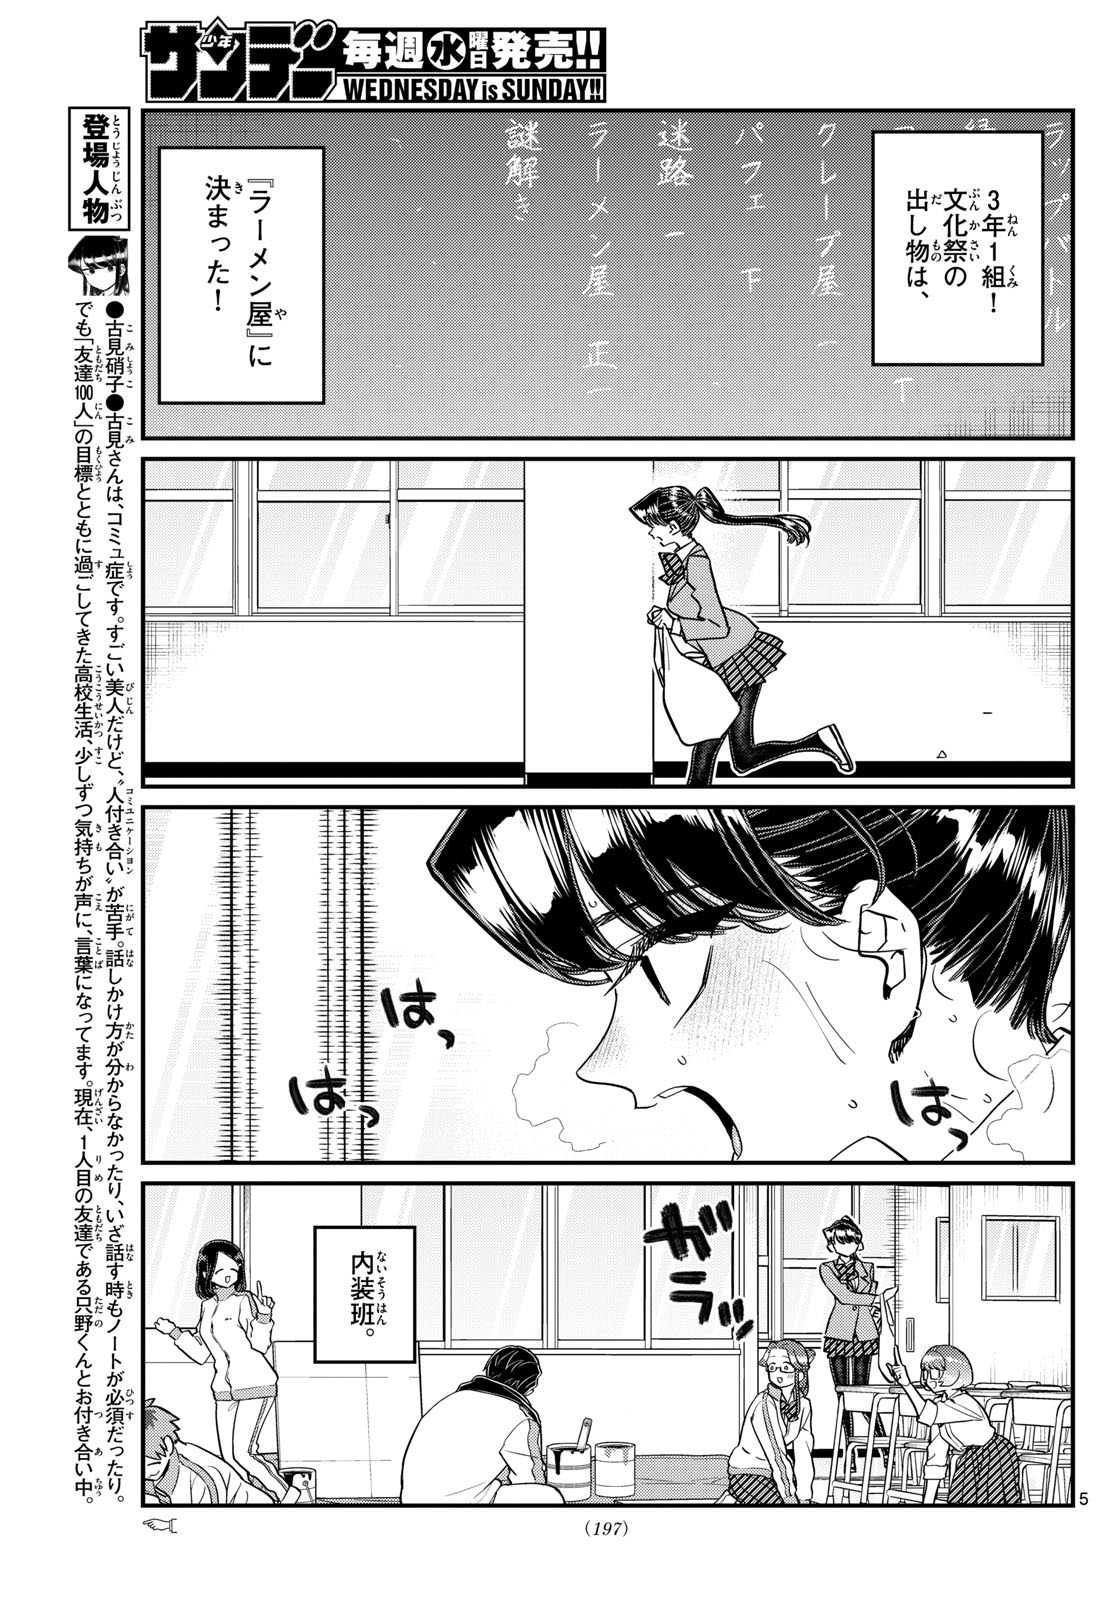 Komi-san wa Komyushou Desu - Chapter 448 - Page 5